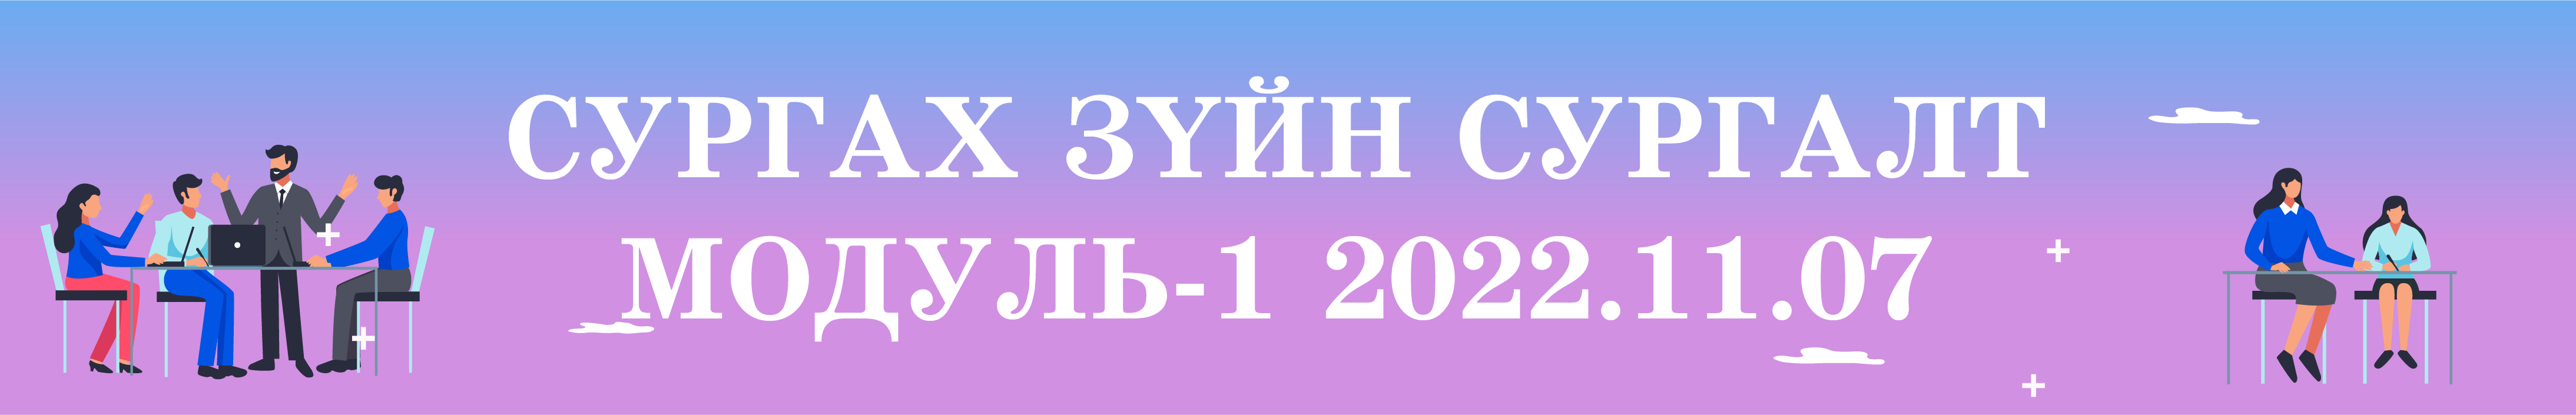 Сургах зүйн сургалт Модуль-1 2022.11.07